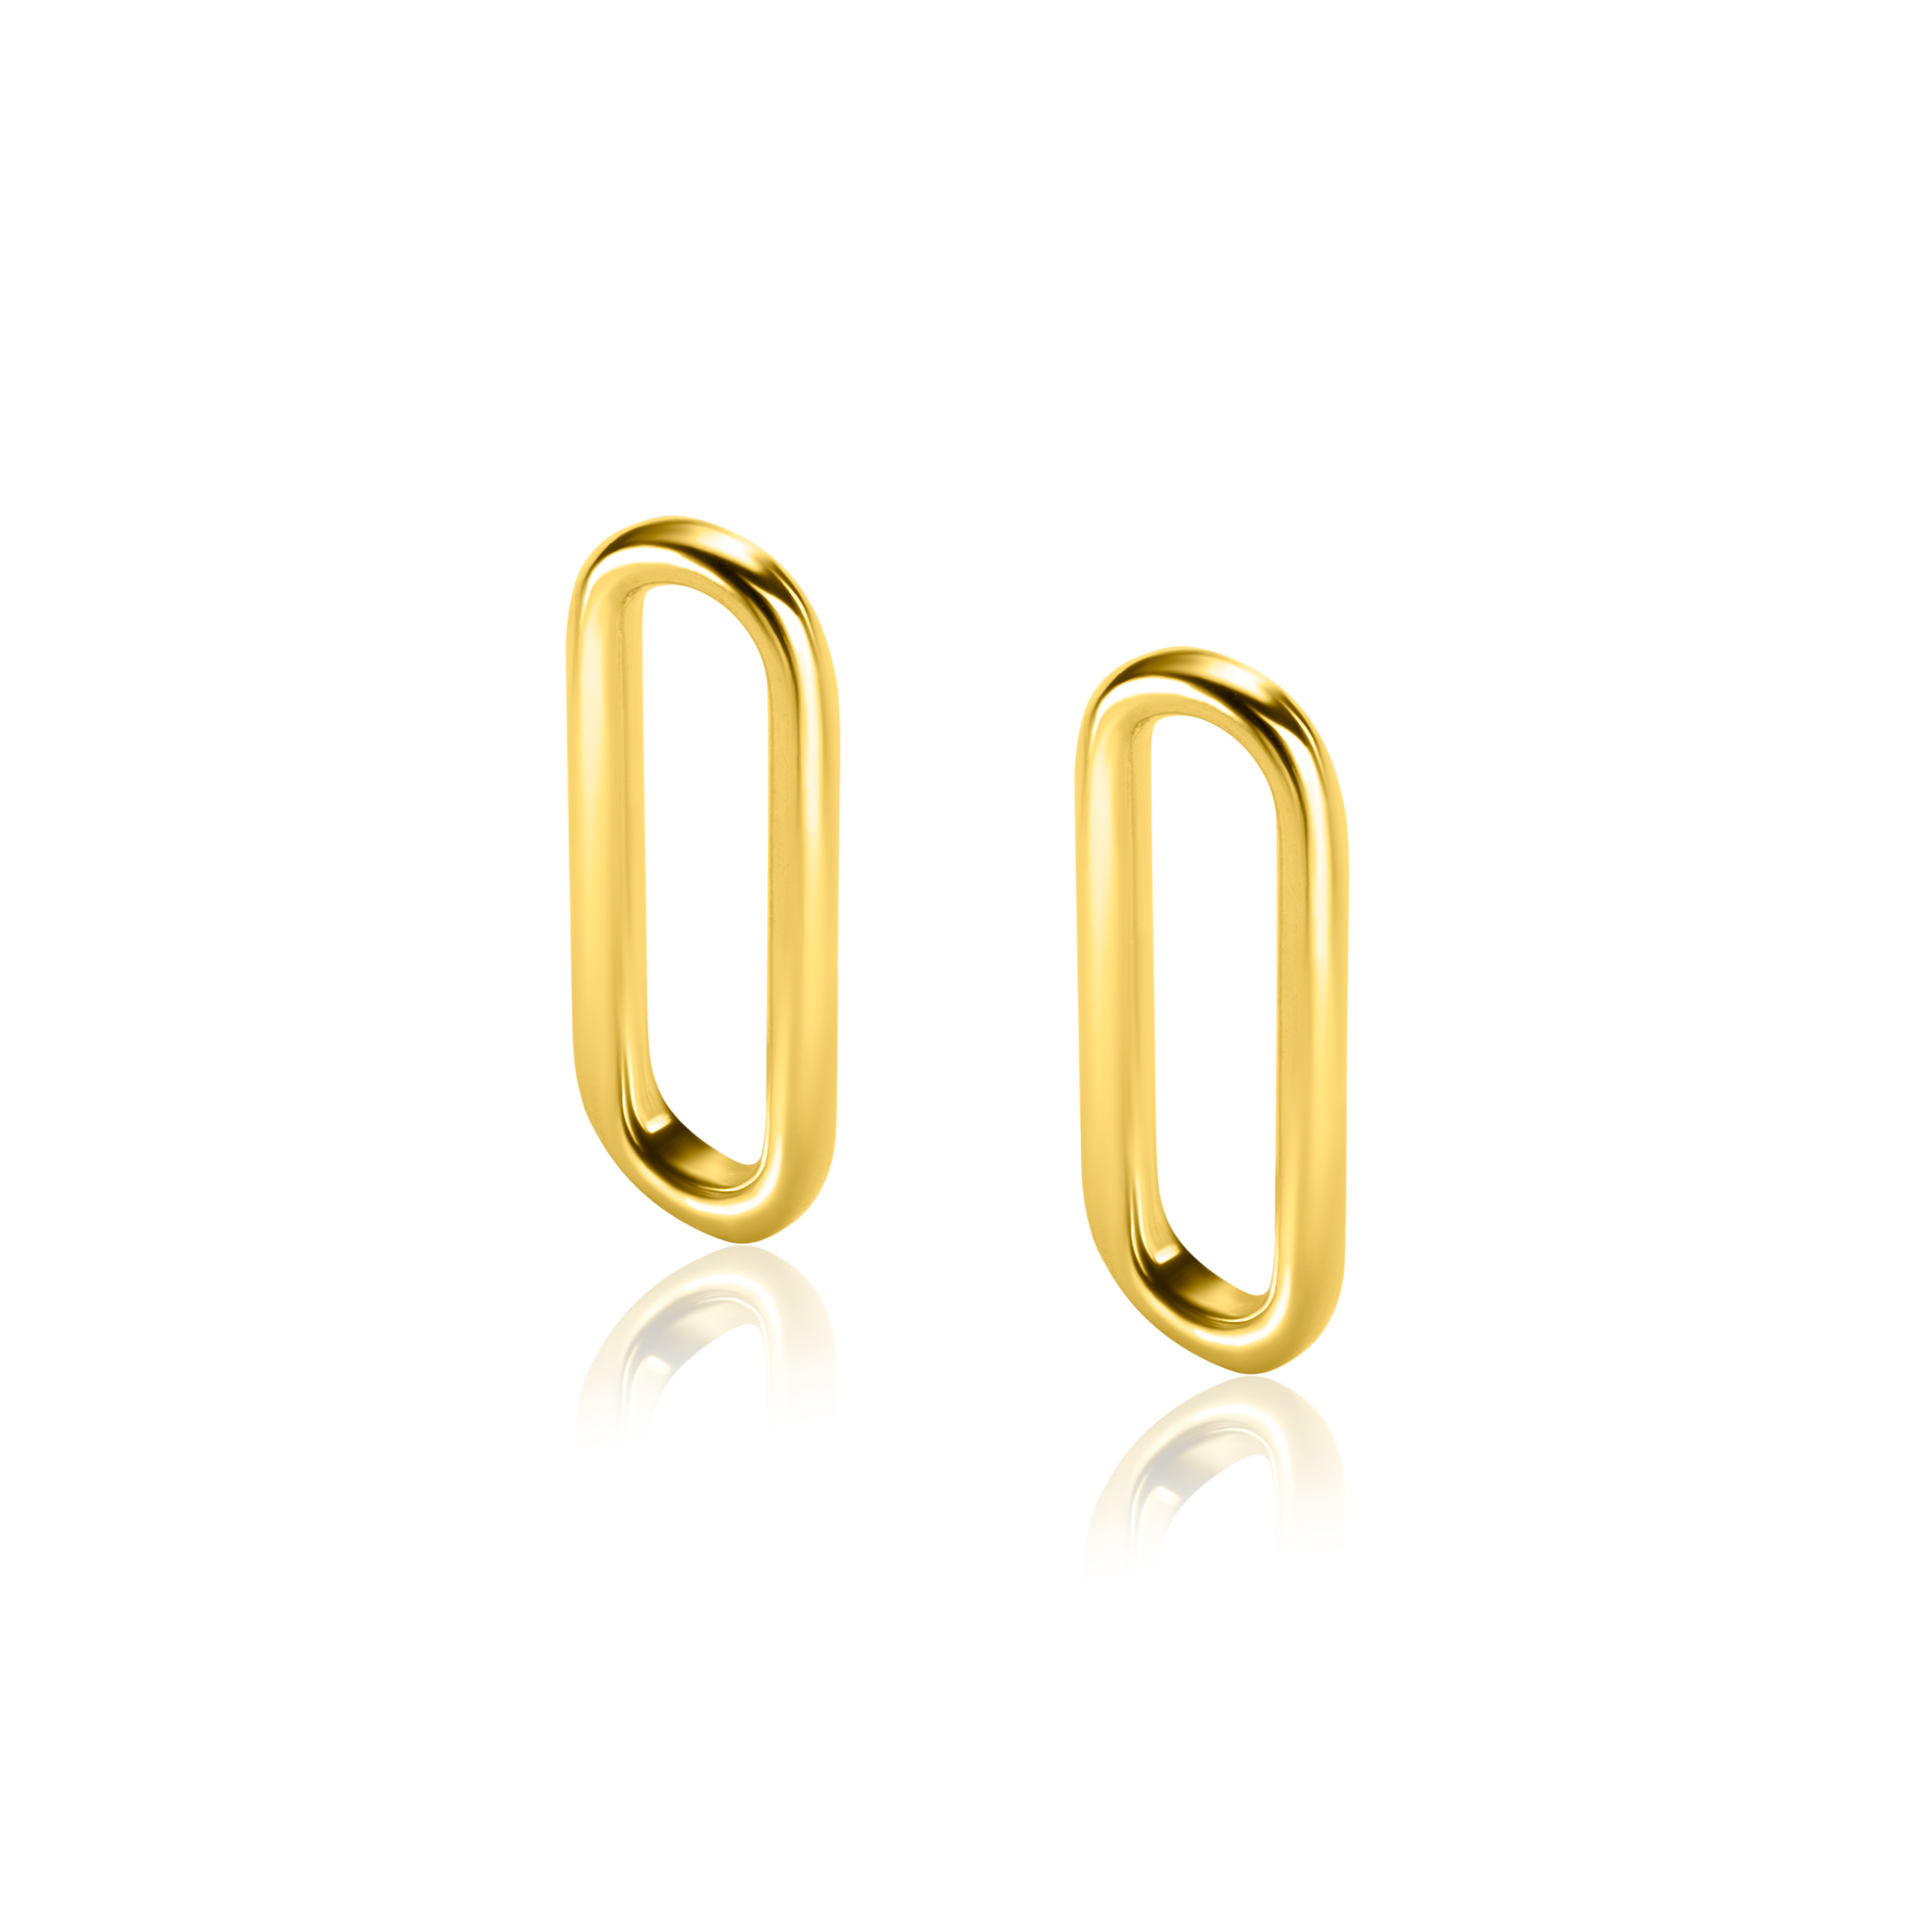 20mm ZINZI Gold Plated Sterling Silver Earrings Pendants Open Oval ZICH2415G (excl. hoop earrings)